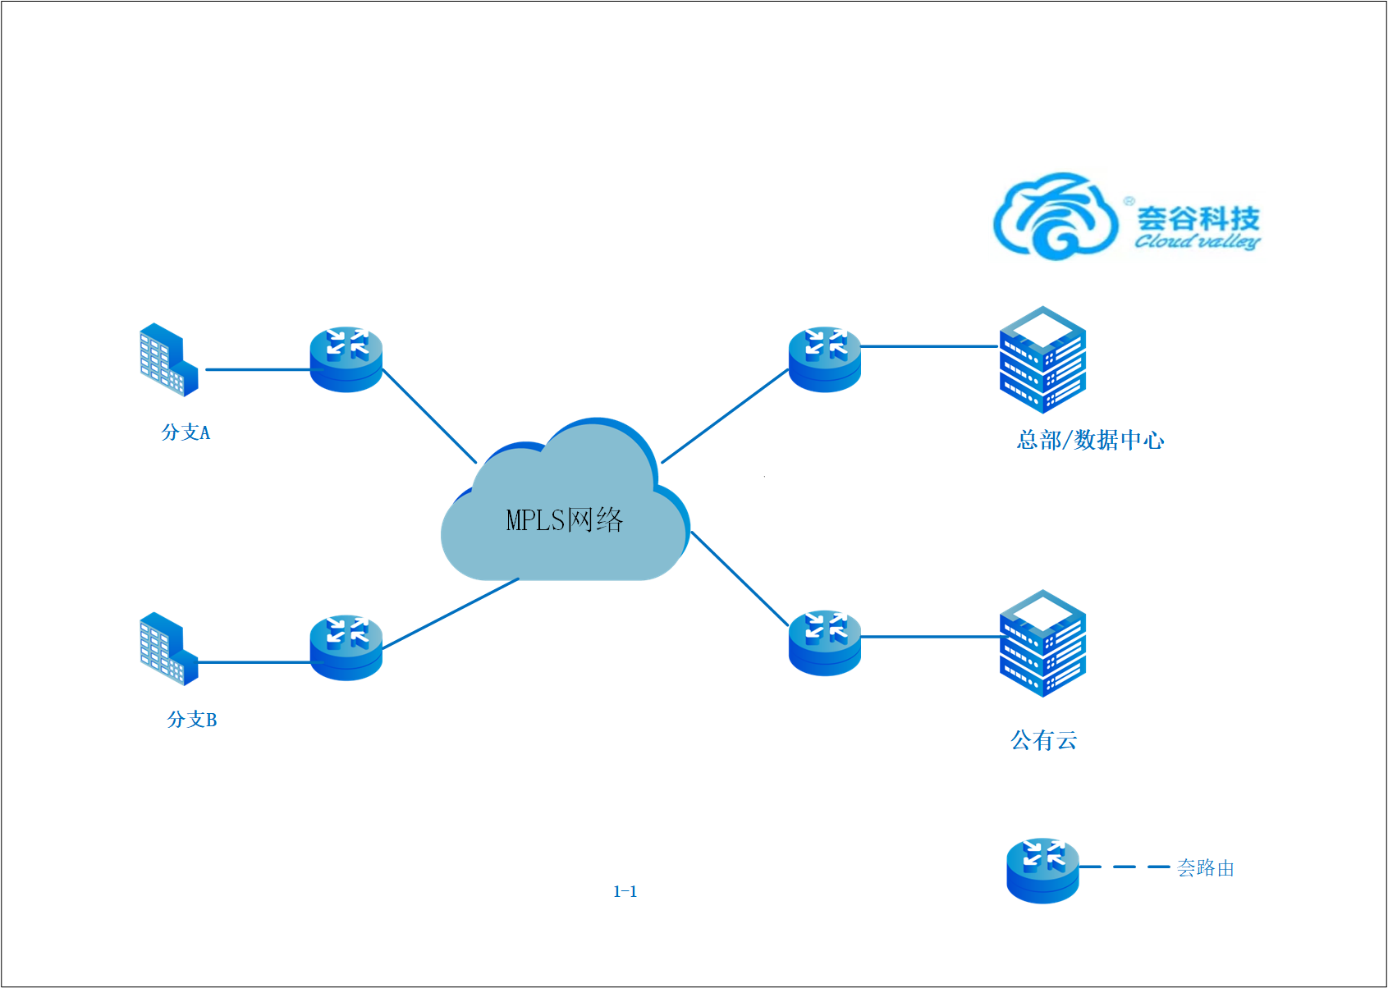 SD-WAN《夽易联》助力企业业务上云组网